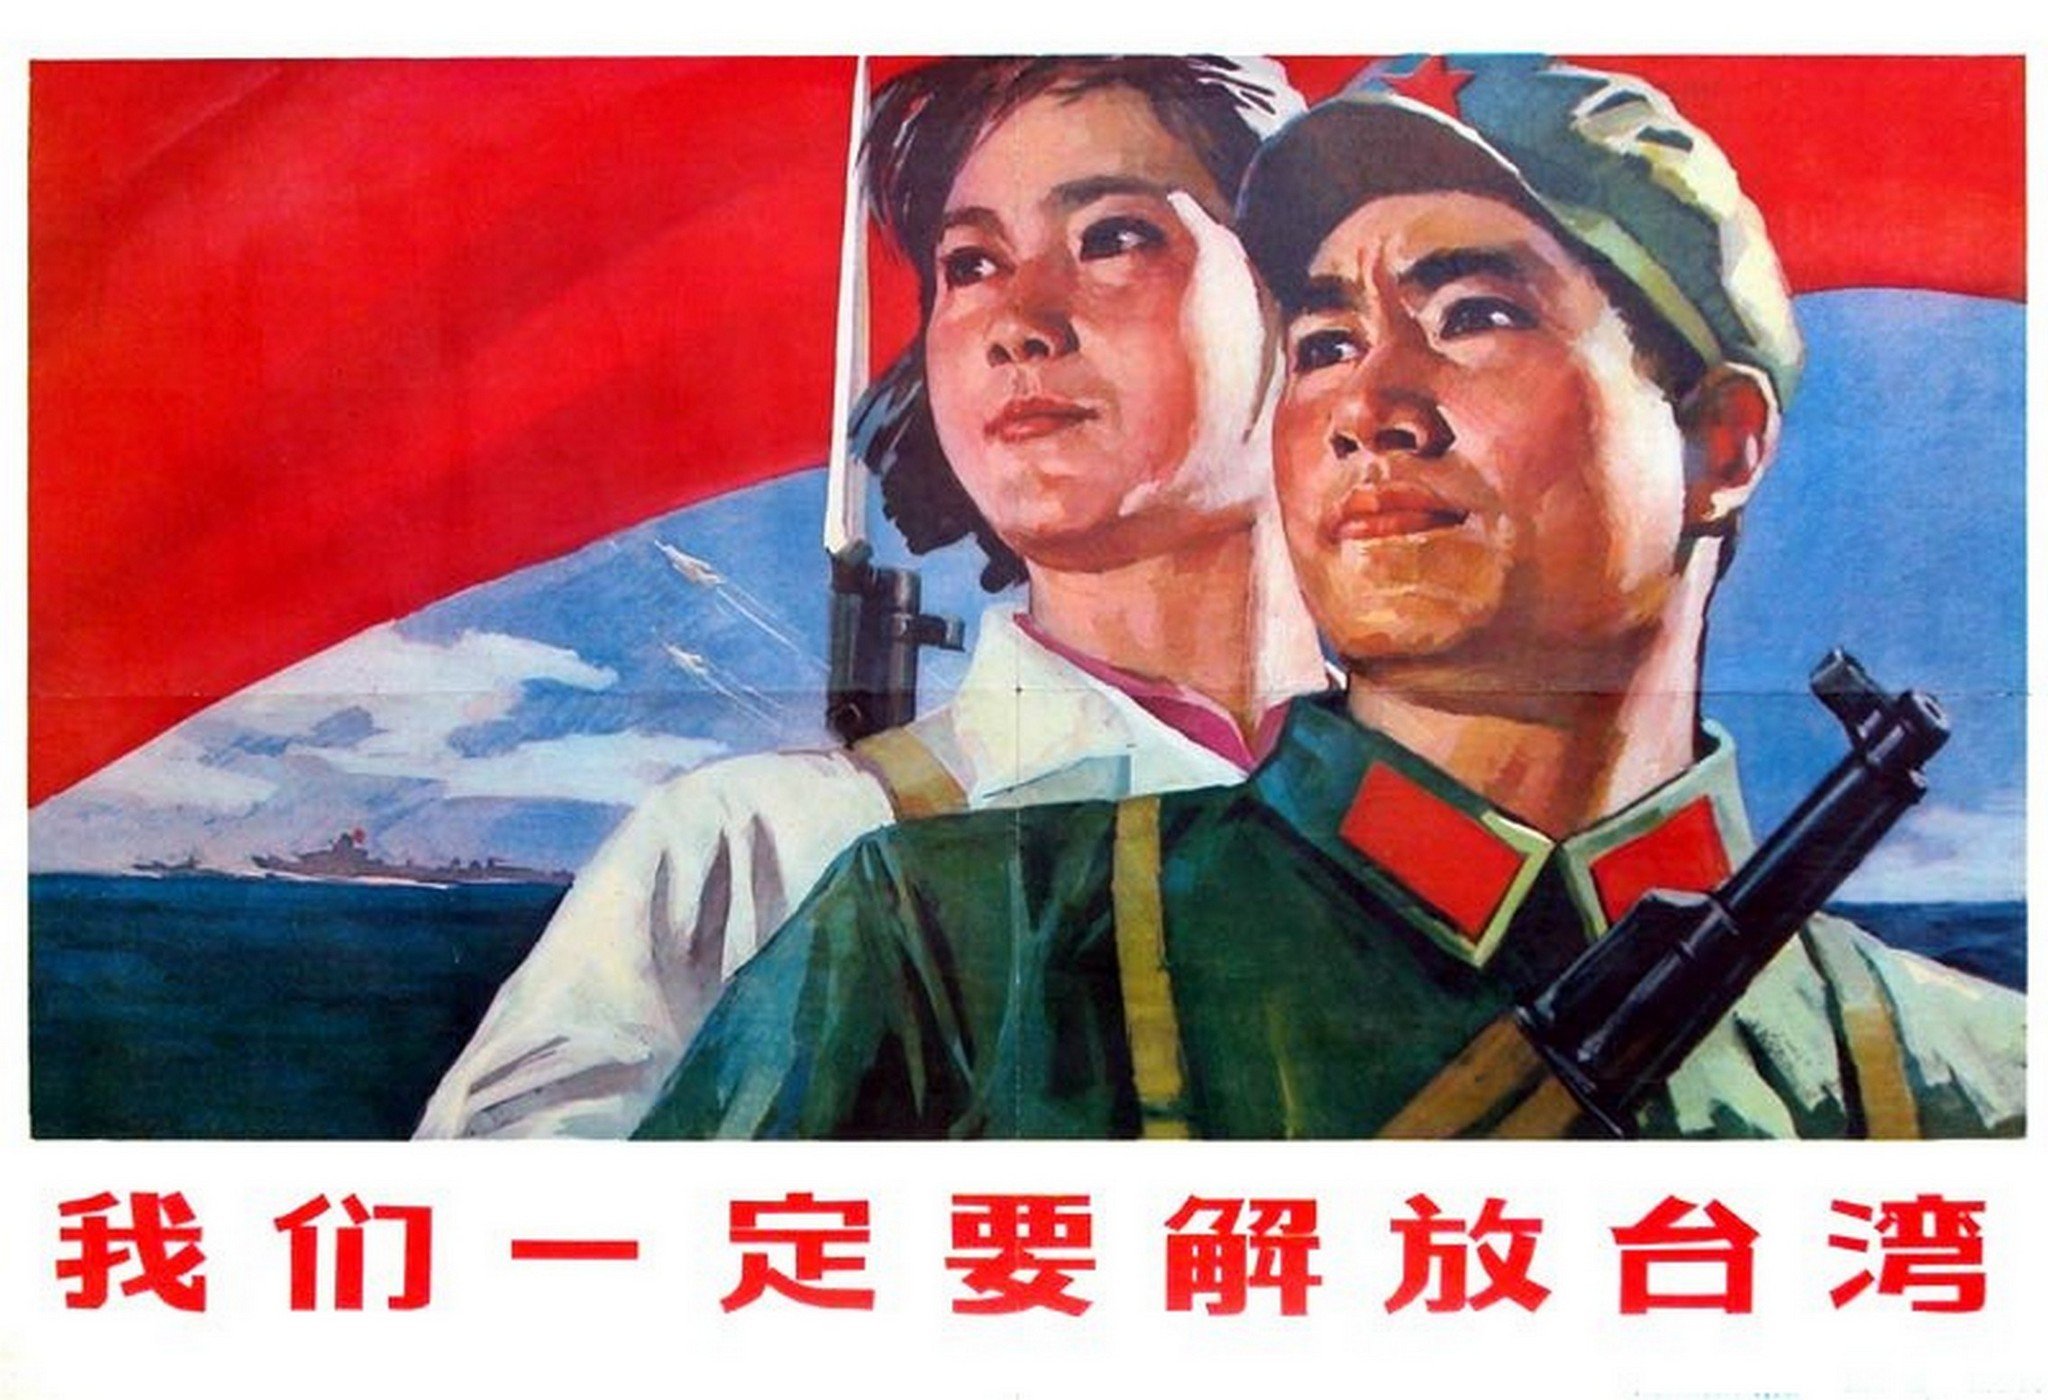 Votv posters. Китайские плакаты Мао Цзэдун. Мао Цзэдун армия плакат. Китайские патриотические плакаты. Патриотические плакаты.